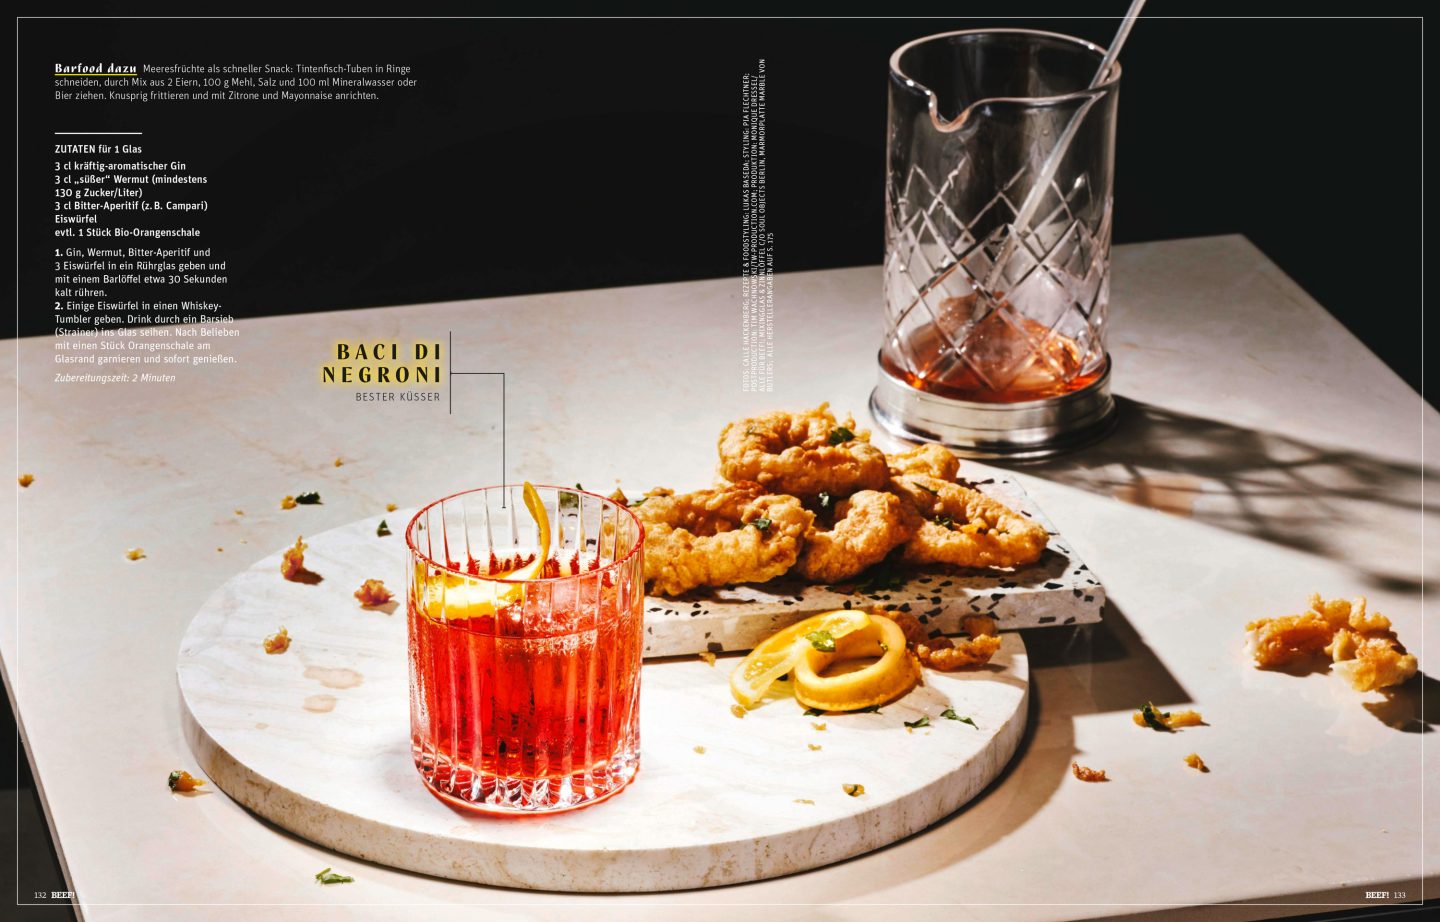 Editorialstrecke für das BEEF! Magazin von Gruner+Jahr - gezeigt werden Negroni Cocktailrezept passend zu verschiedenen Ländern - hier Italien mit frittiertem Tintenfisch | Konzeption und Fotografie Studio Hackenberg